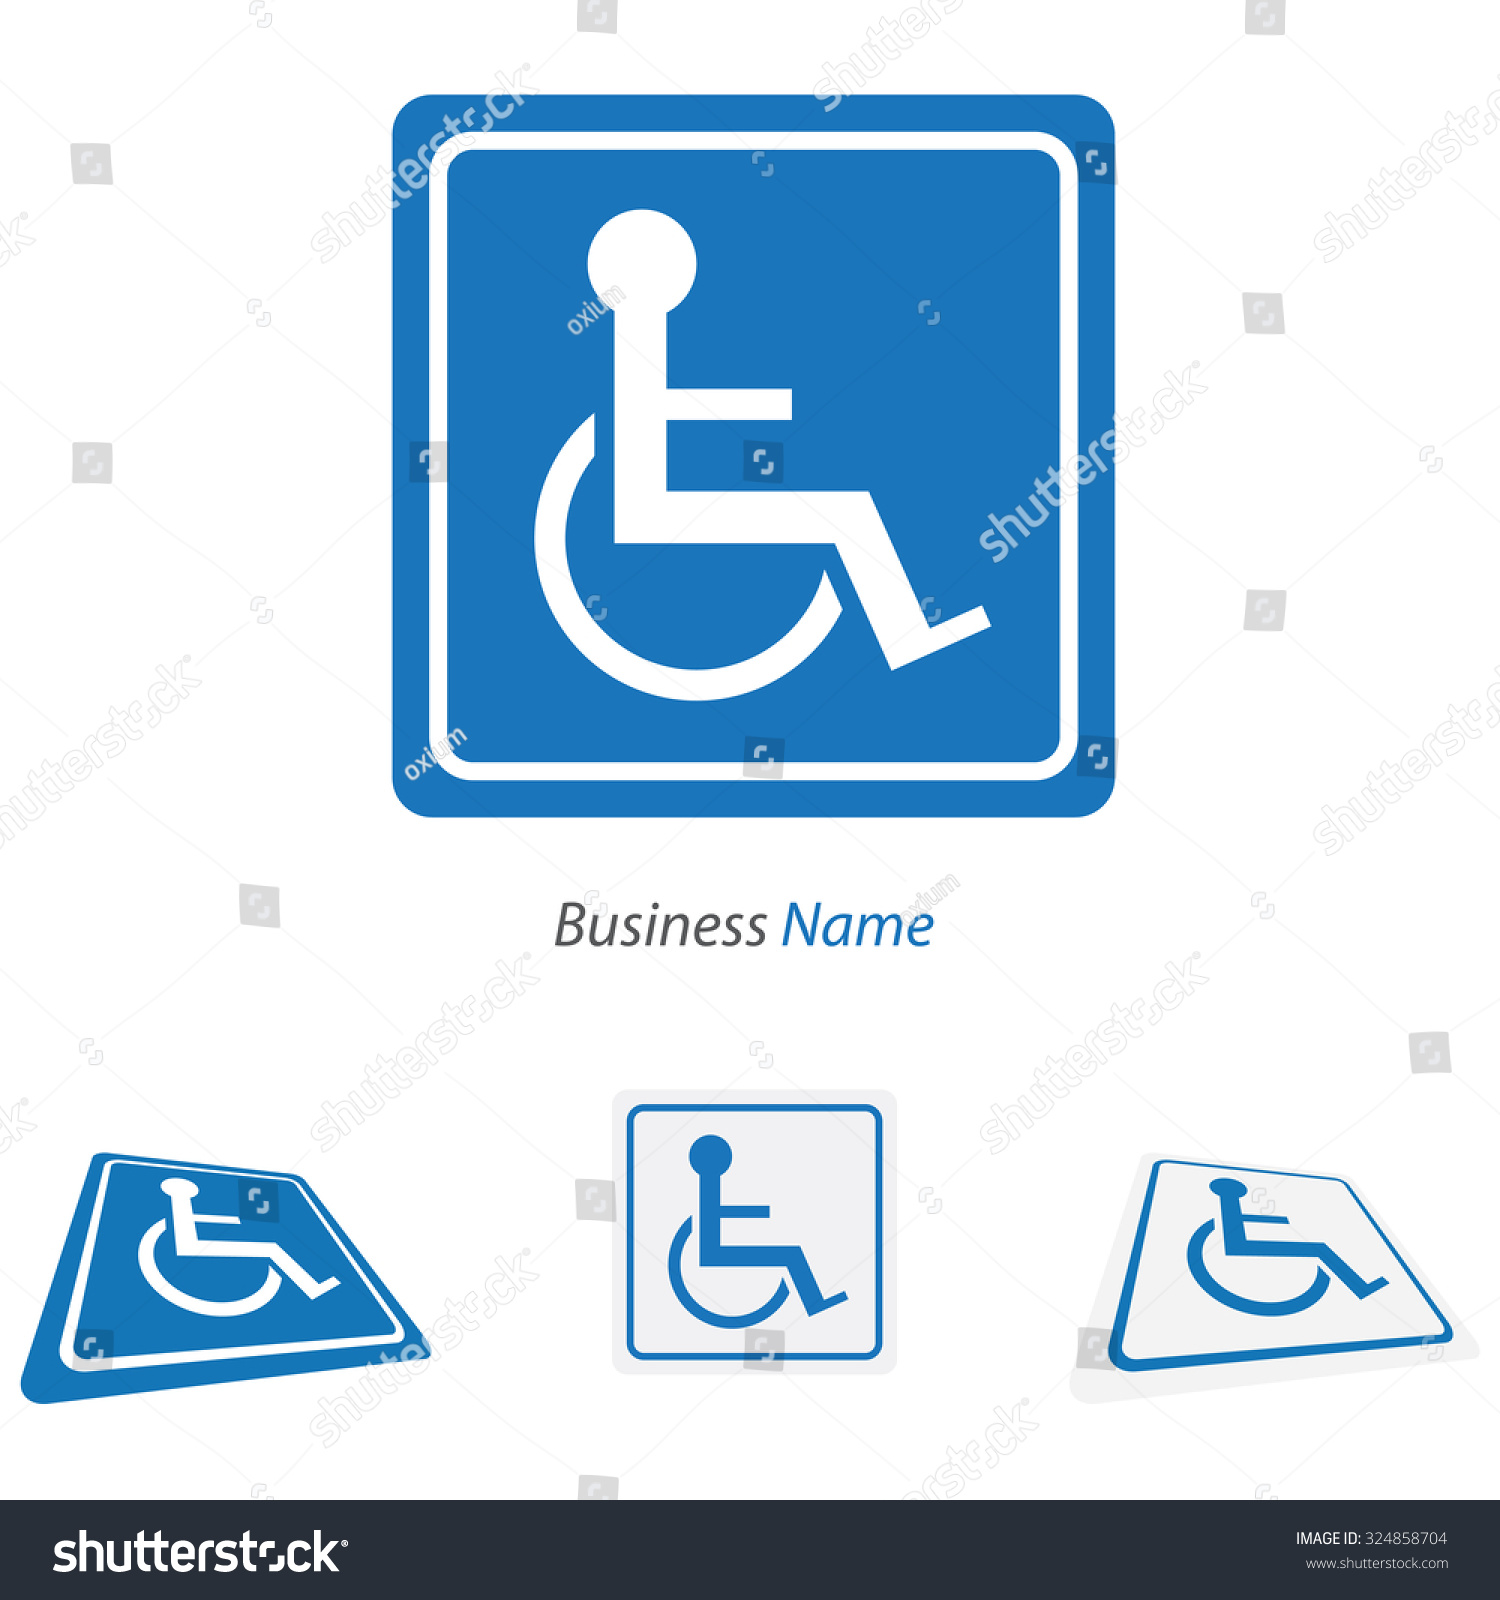 Logo Handicap Stock Vector Illustration 324858704 : Shutterstock